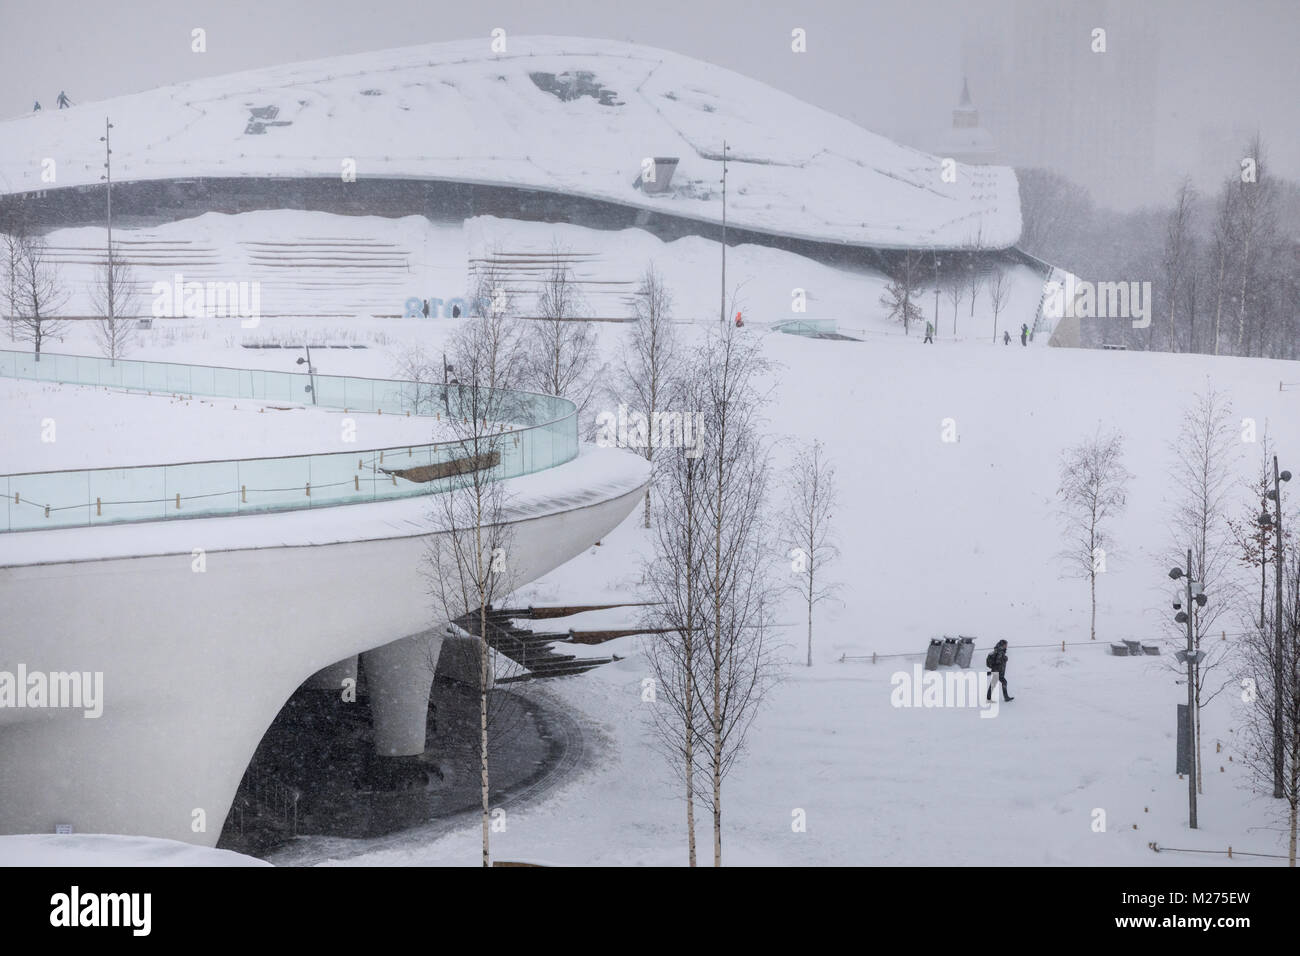 Vue sur le Centre des médias et le toit en verre de la salle de concert couverte de neige après une forte chute de neige dans le parc Zaryadie à Moscou, Russie Banque D'Images